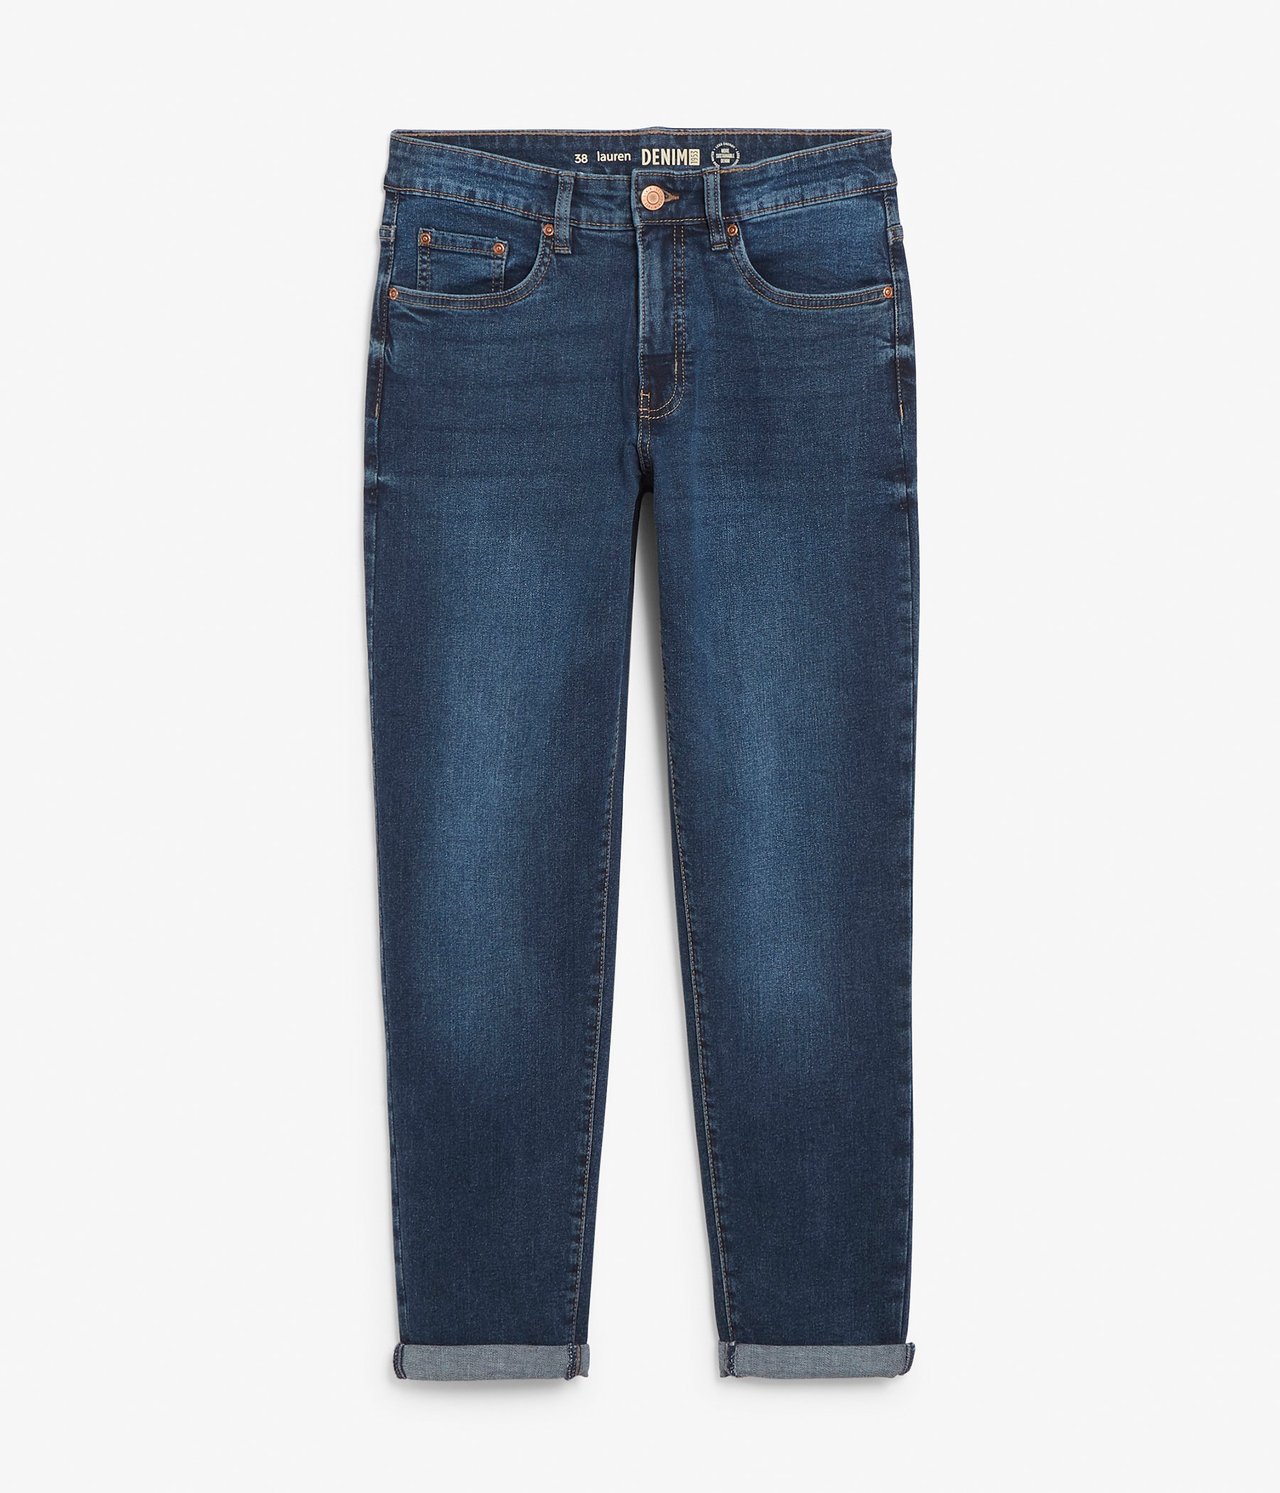 Lauren girlfriend jeans - Mörk denim - 8